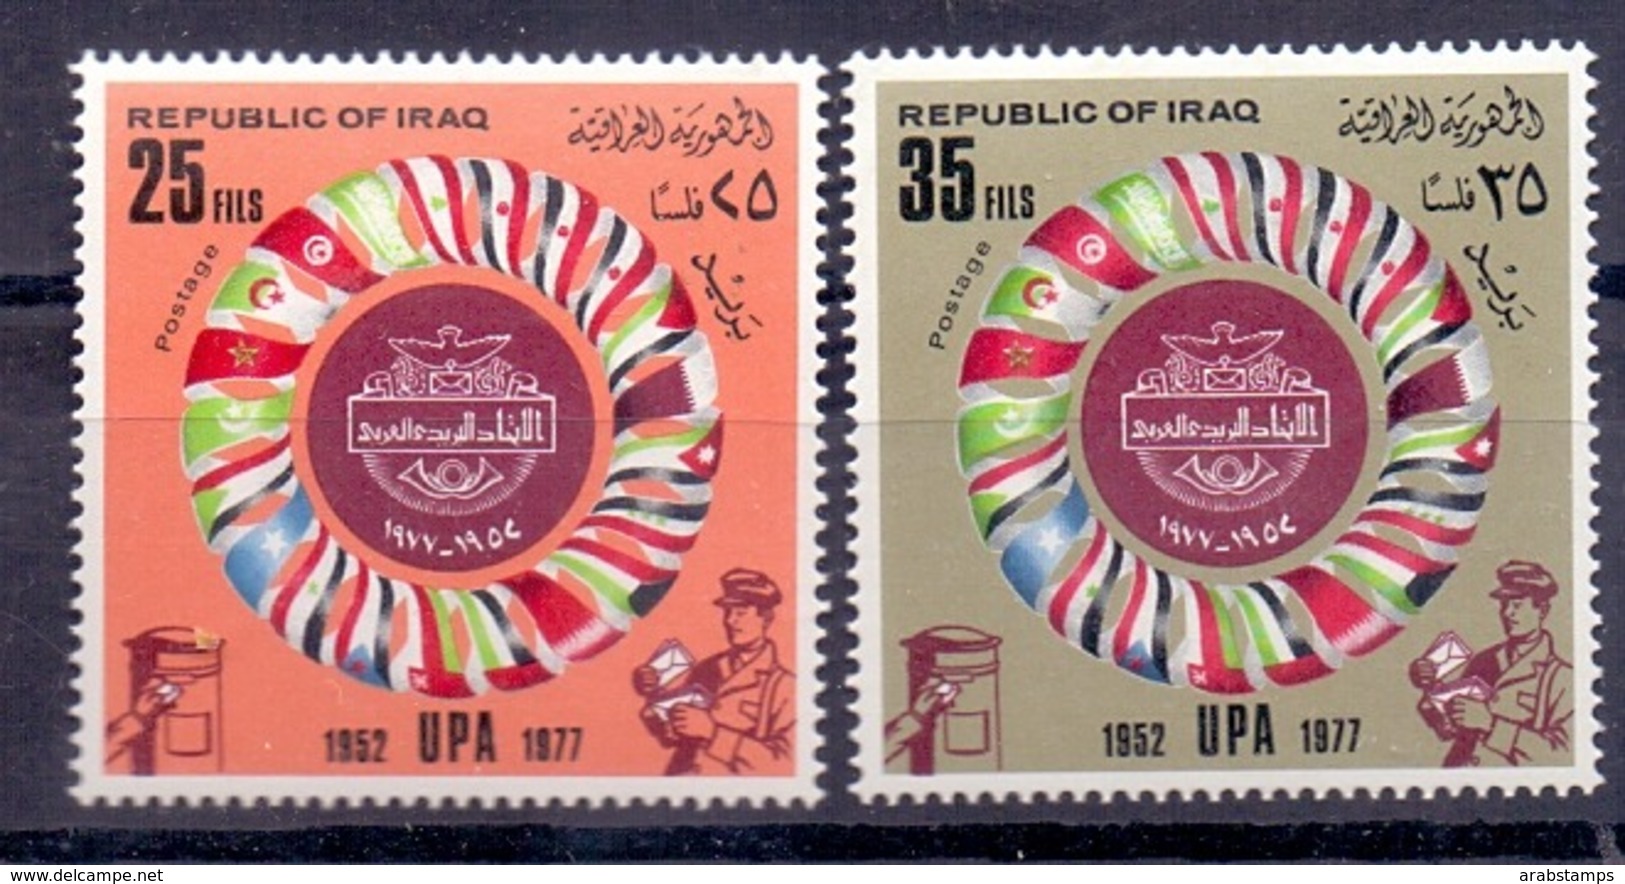 1977 IRAQ Complete Set 2 Values MNH S.G.No.1283-1284 - Iraq